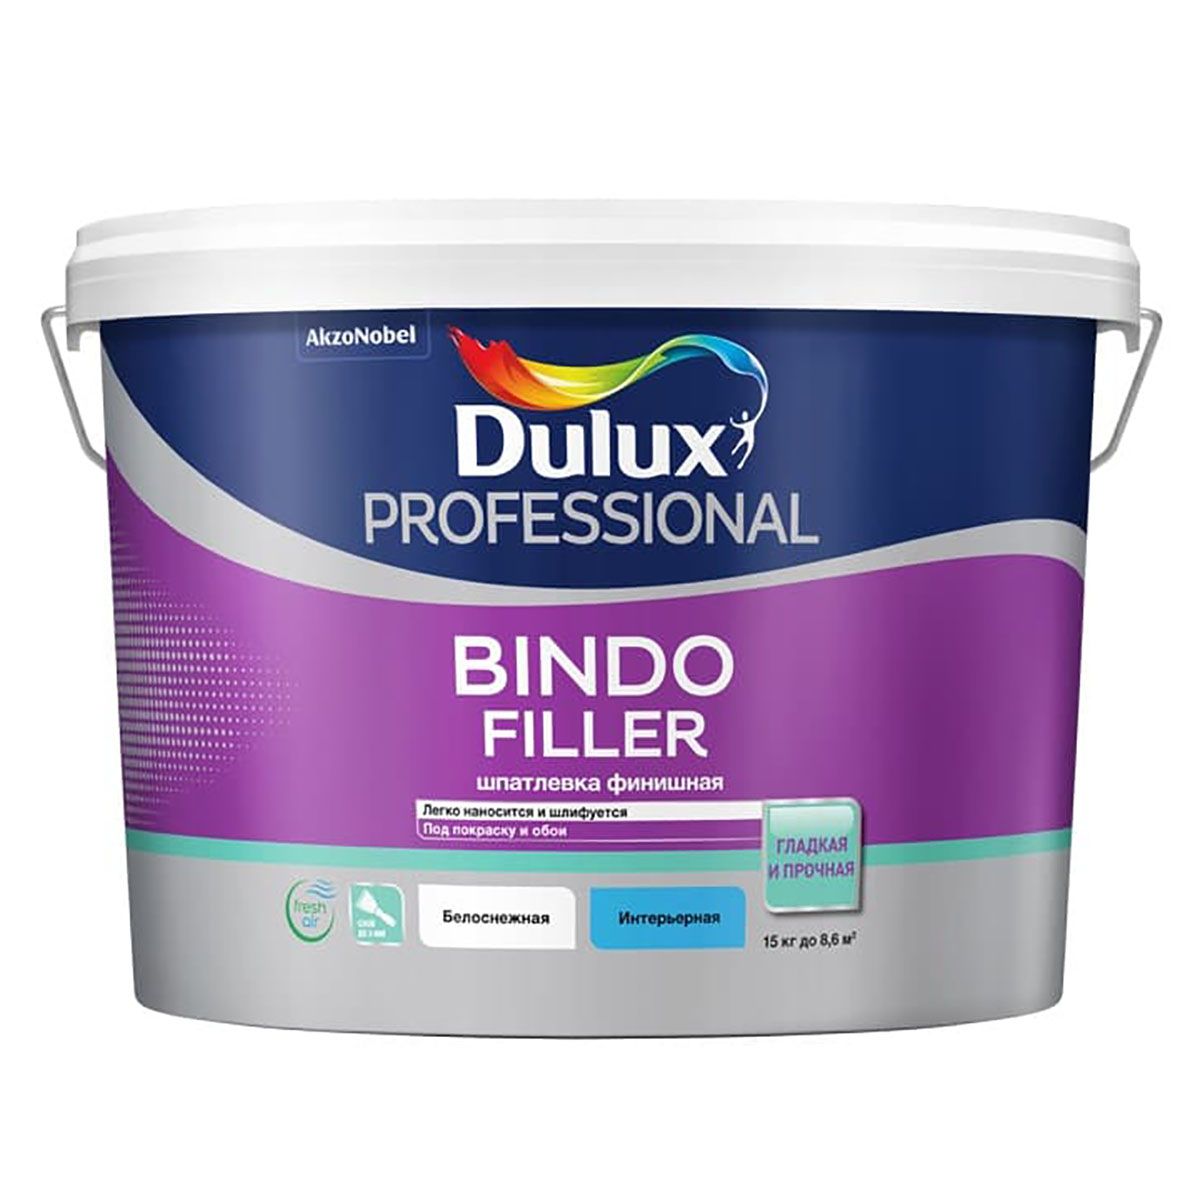 Шпатлевка для стен и потолков Dulux Bindo Filler финишная, 8,6 л